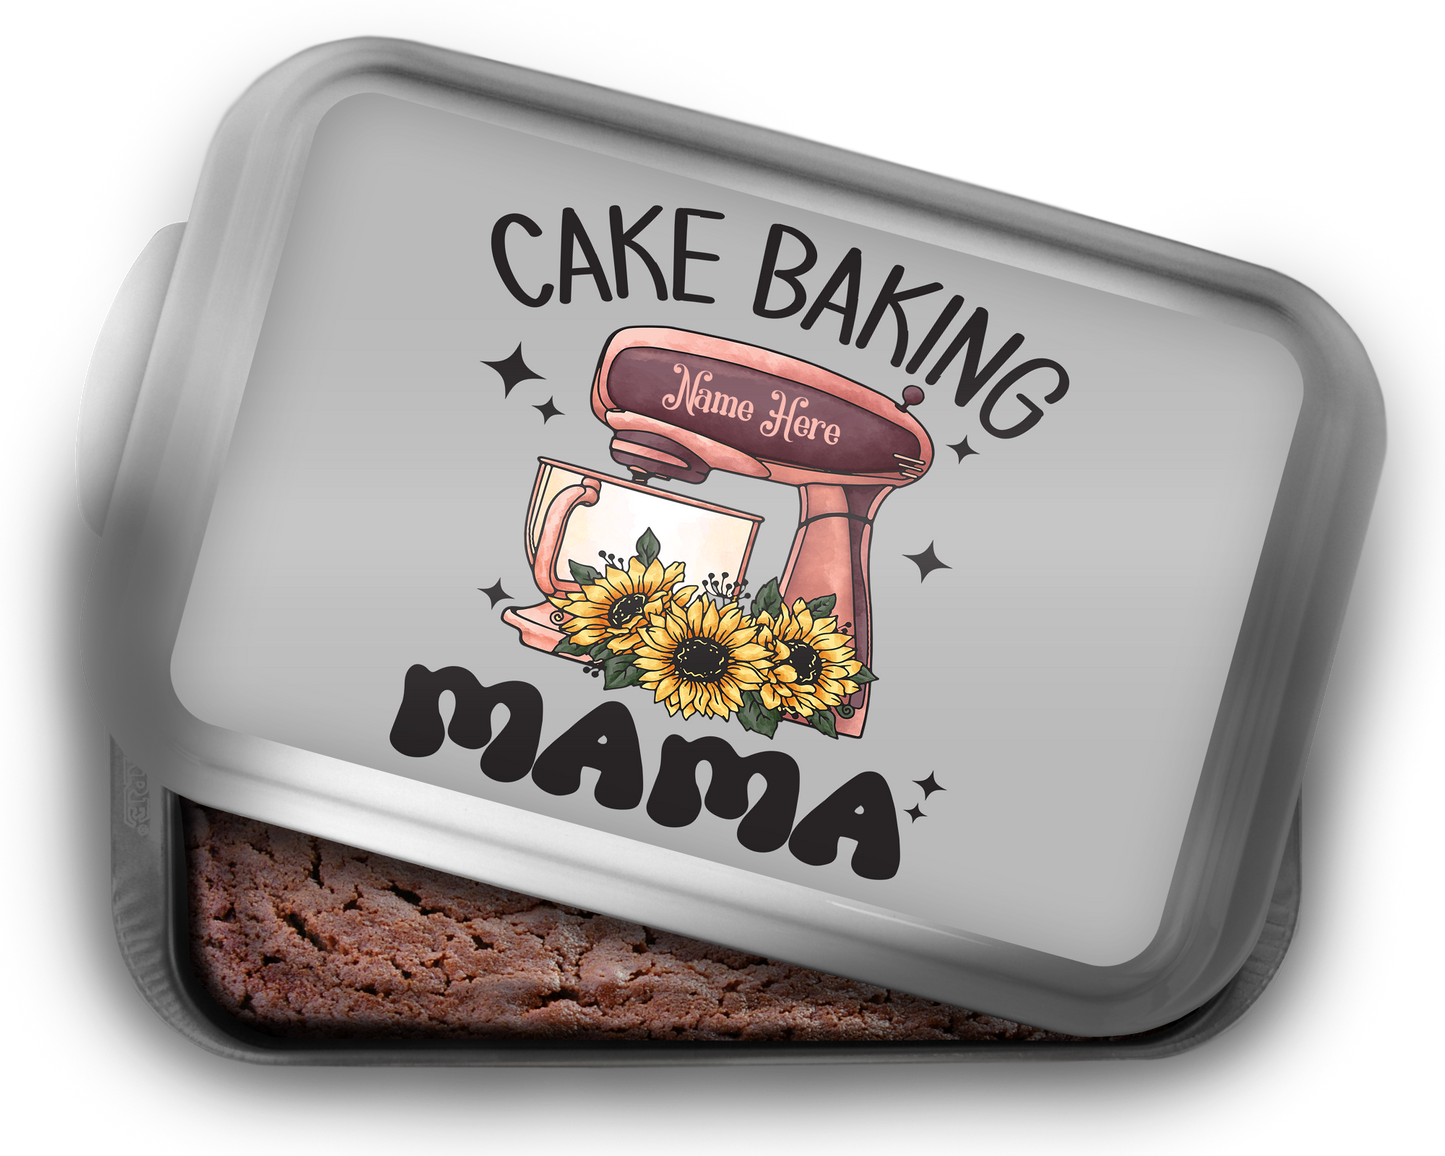 Cake Baking Mama